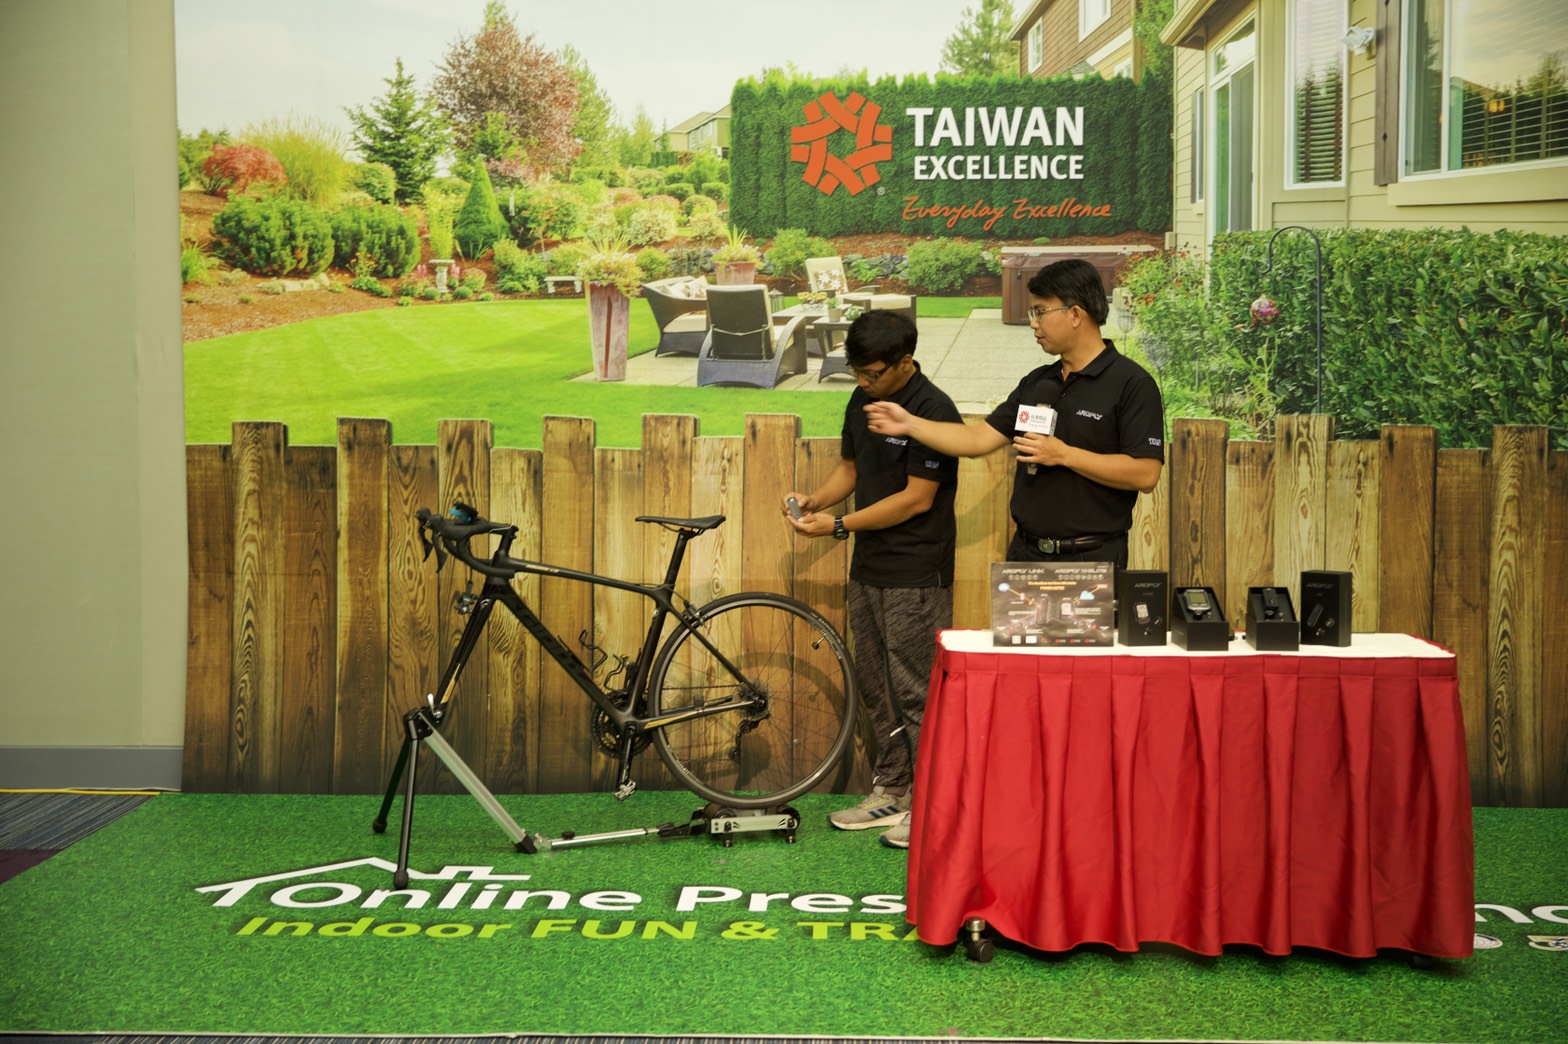 Taiwan Excellence khuyến khích tận hưởng và lan toả niềm vui trong mùa dịch với các sản phẩm thông minh